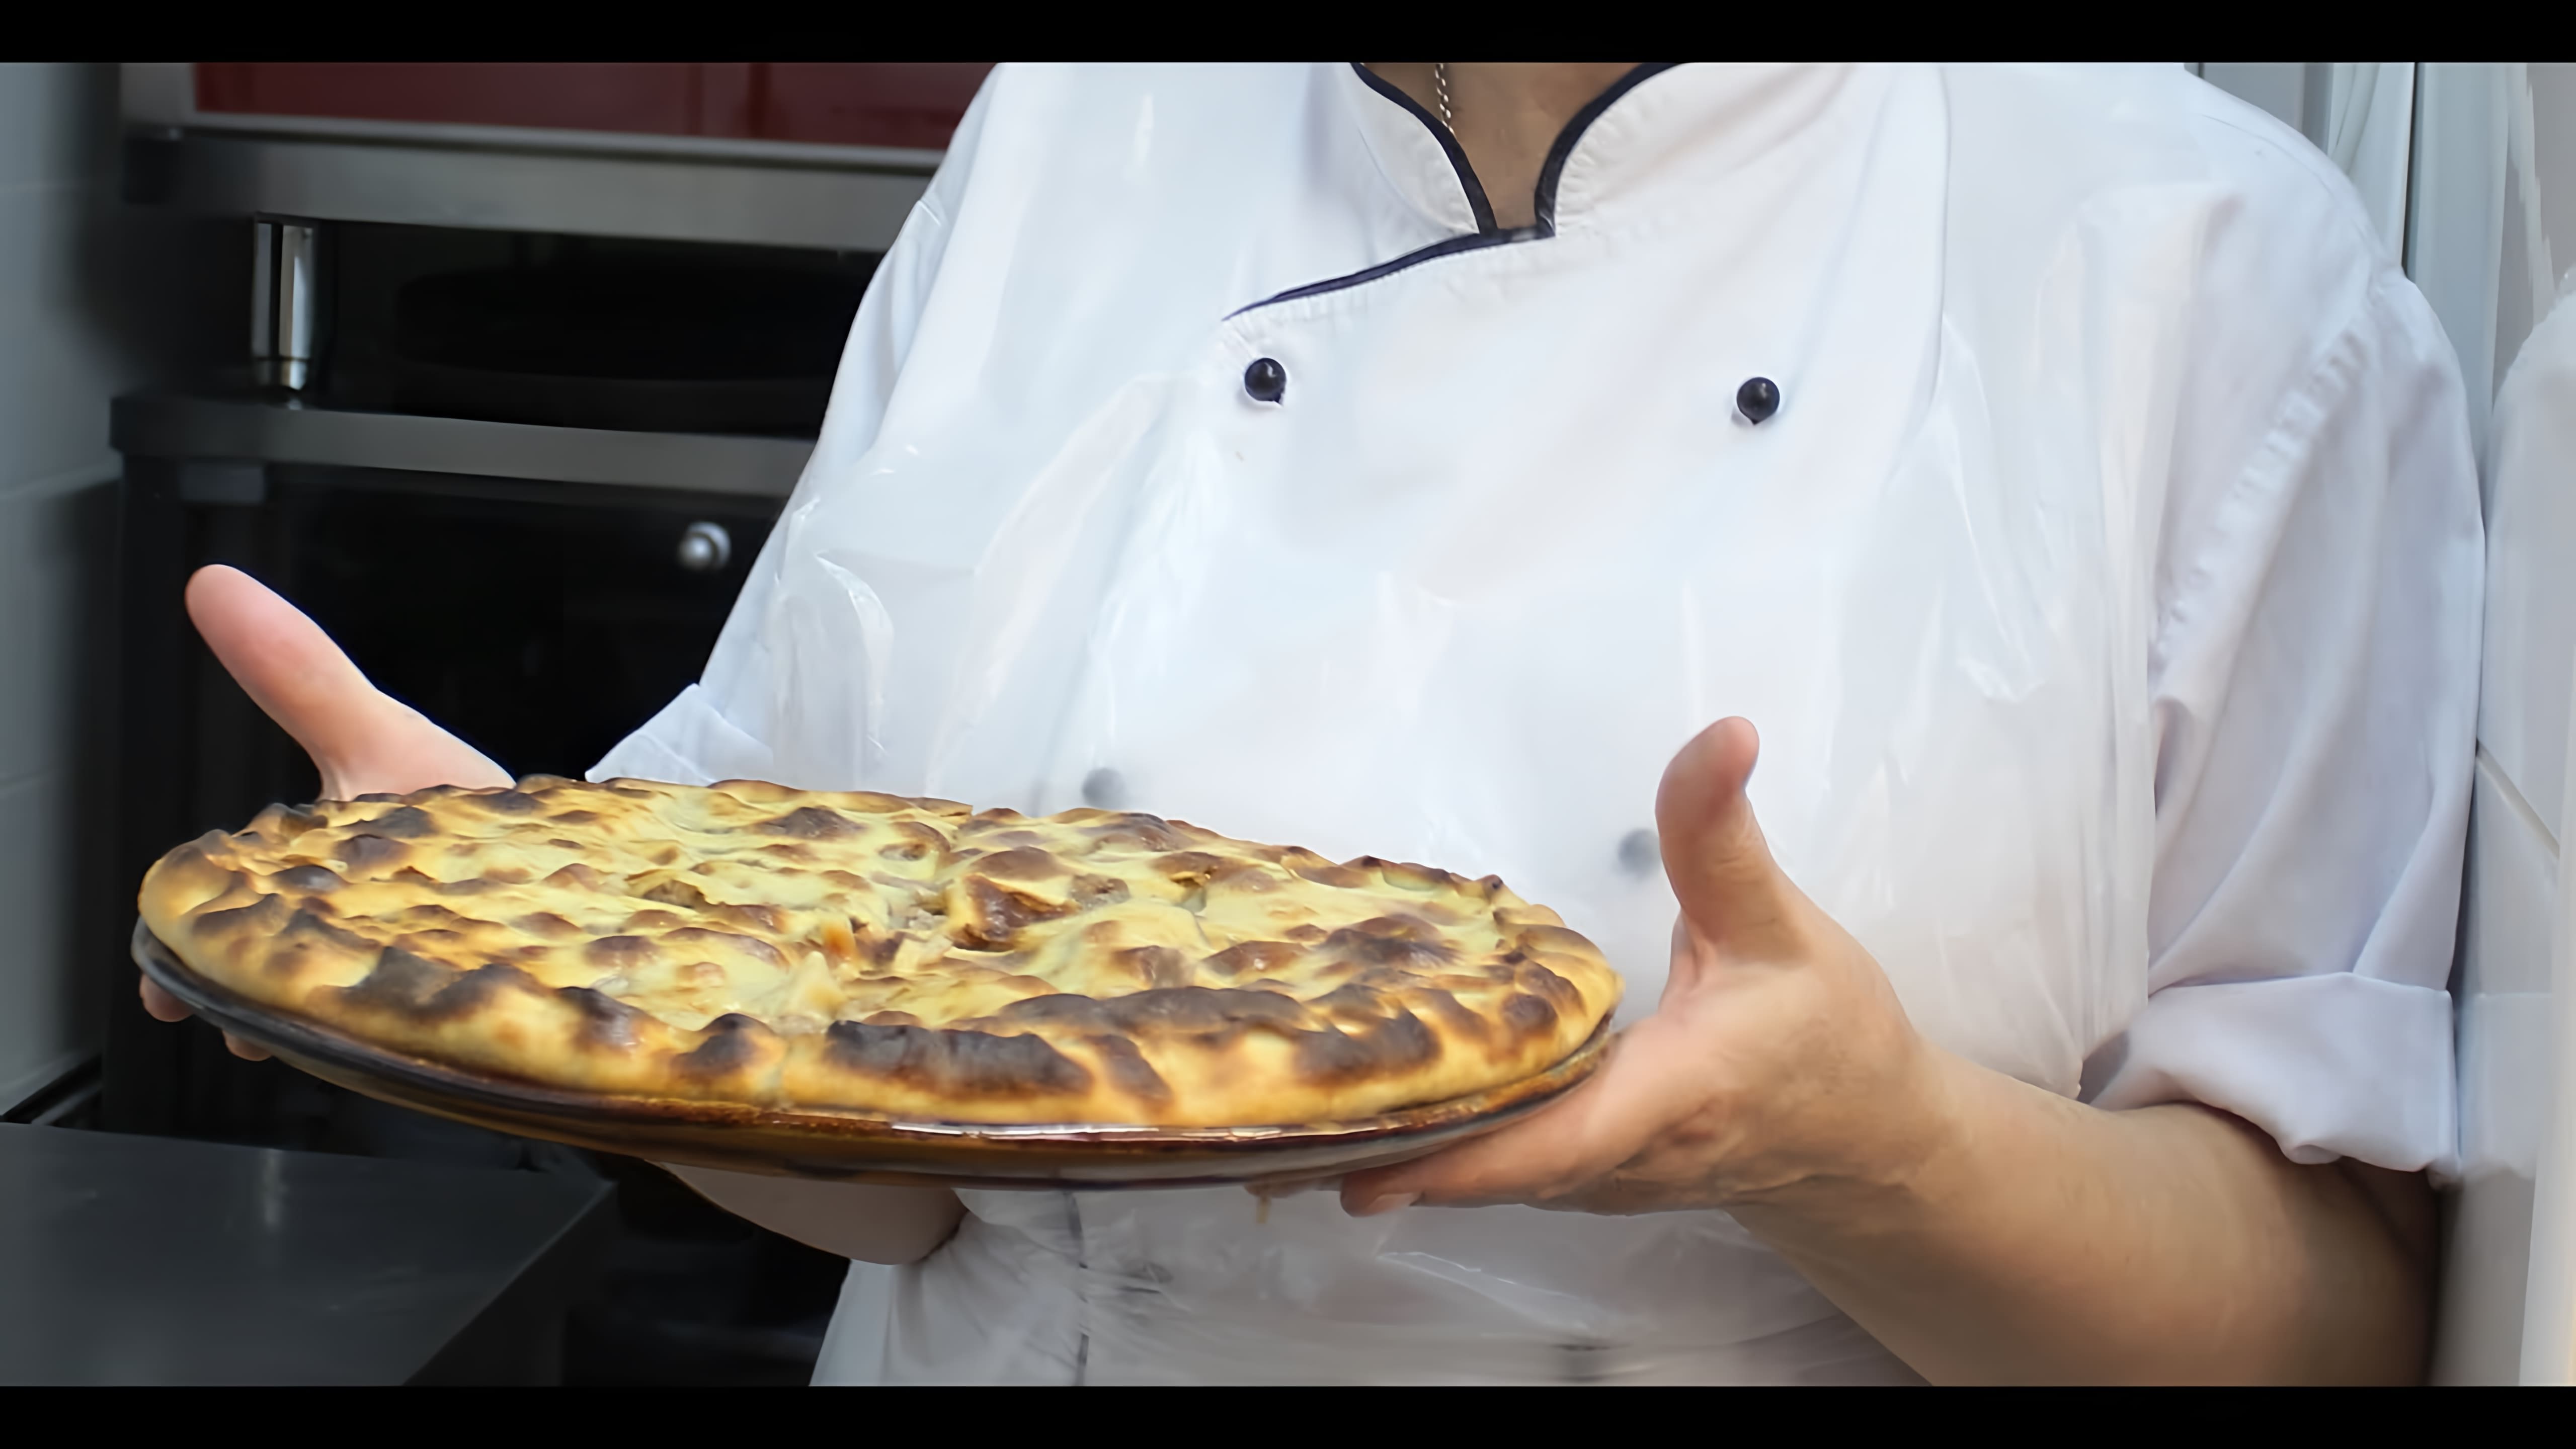 В данном видео демонстрируется процесс приготовления осетинского пирога с мясом